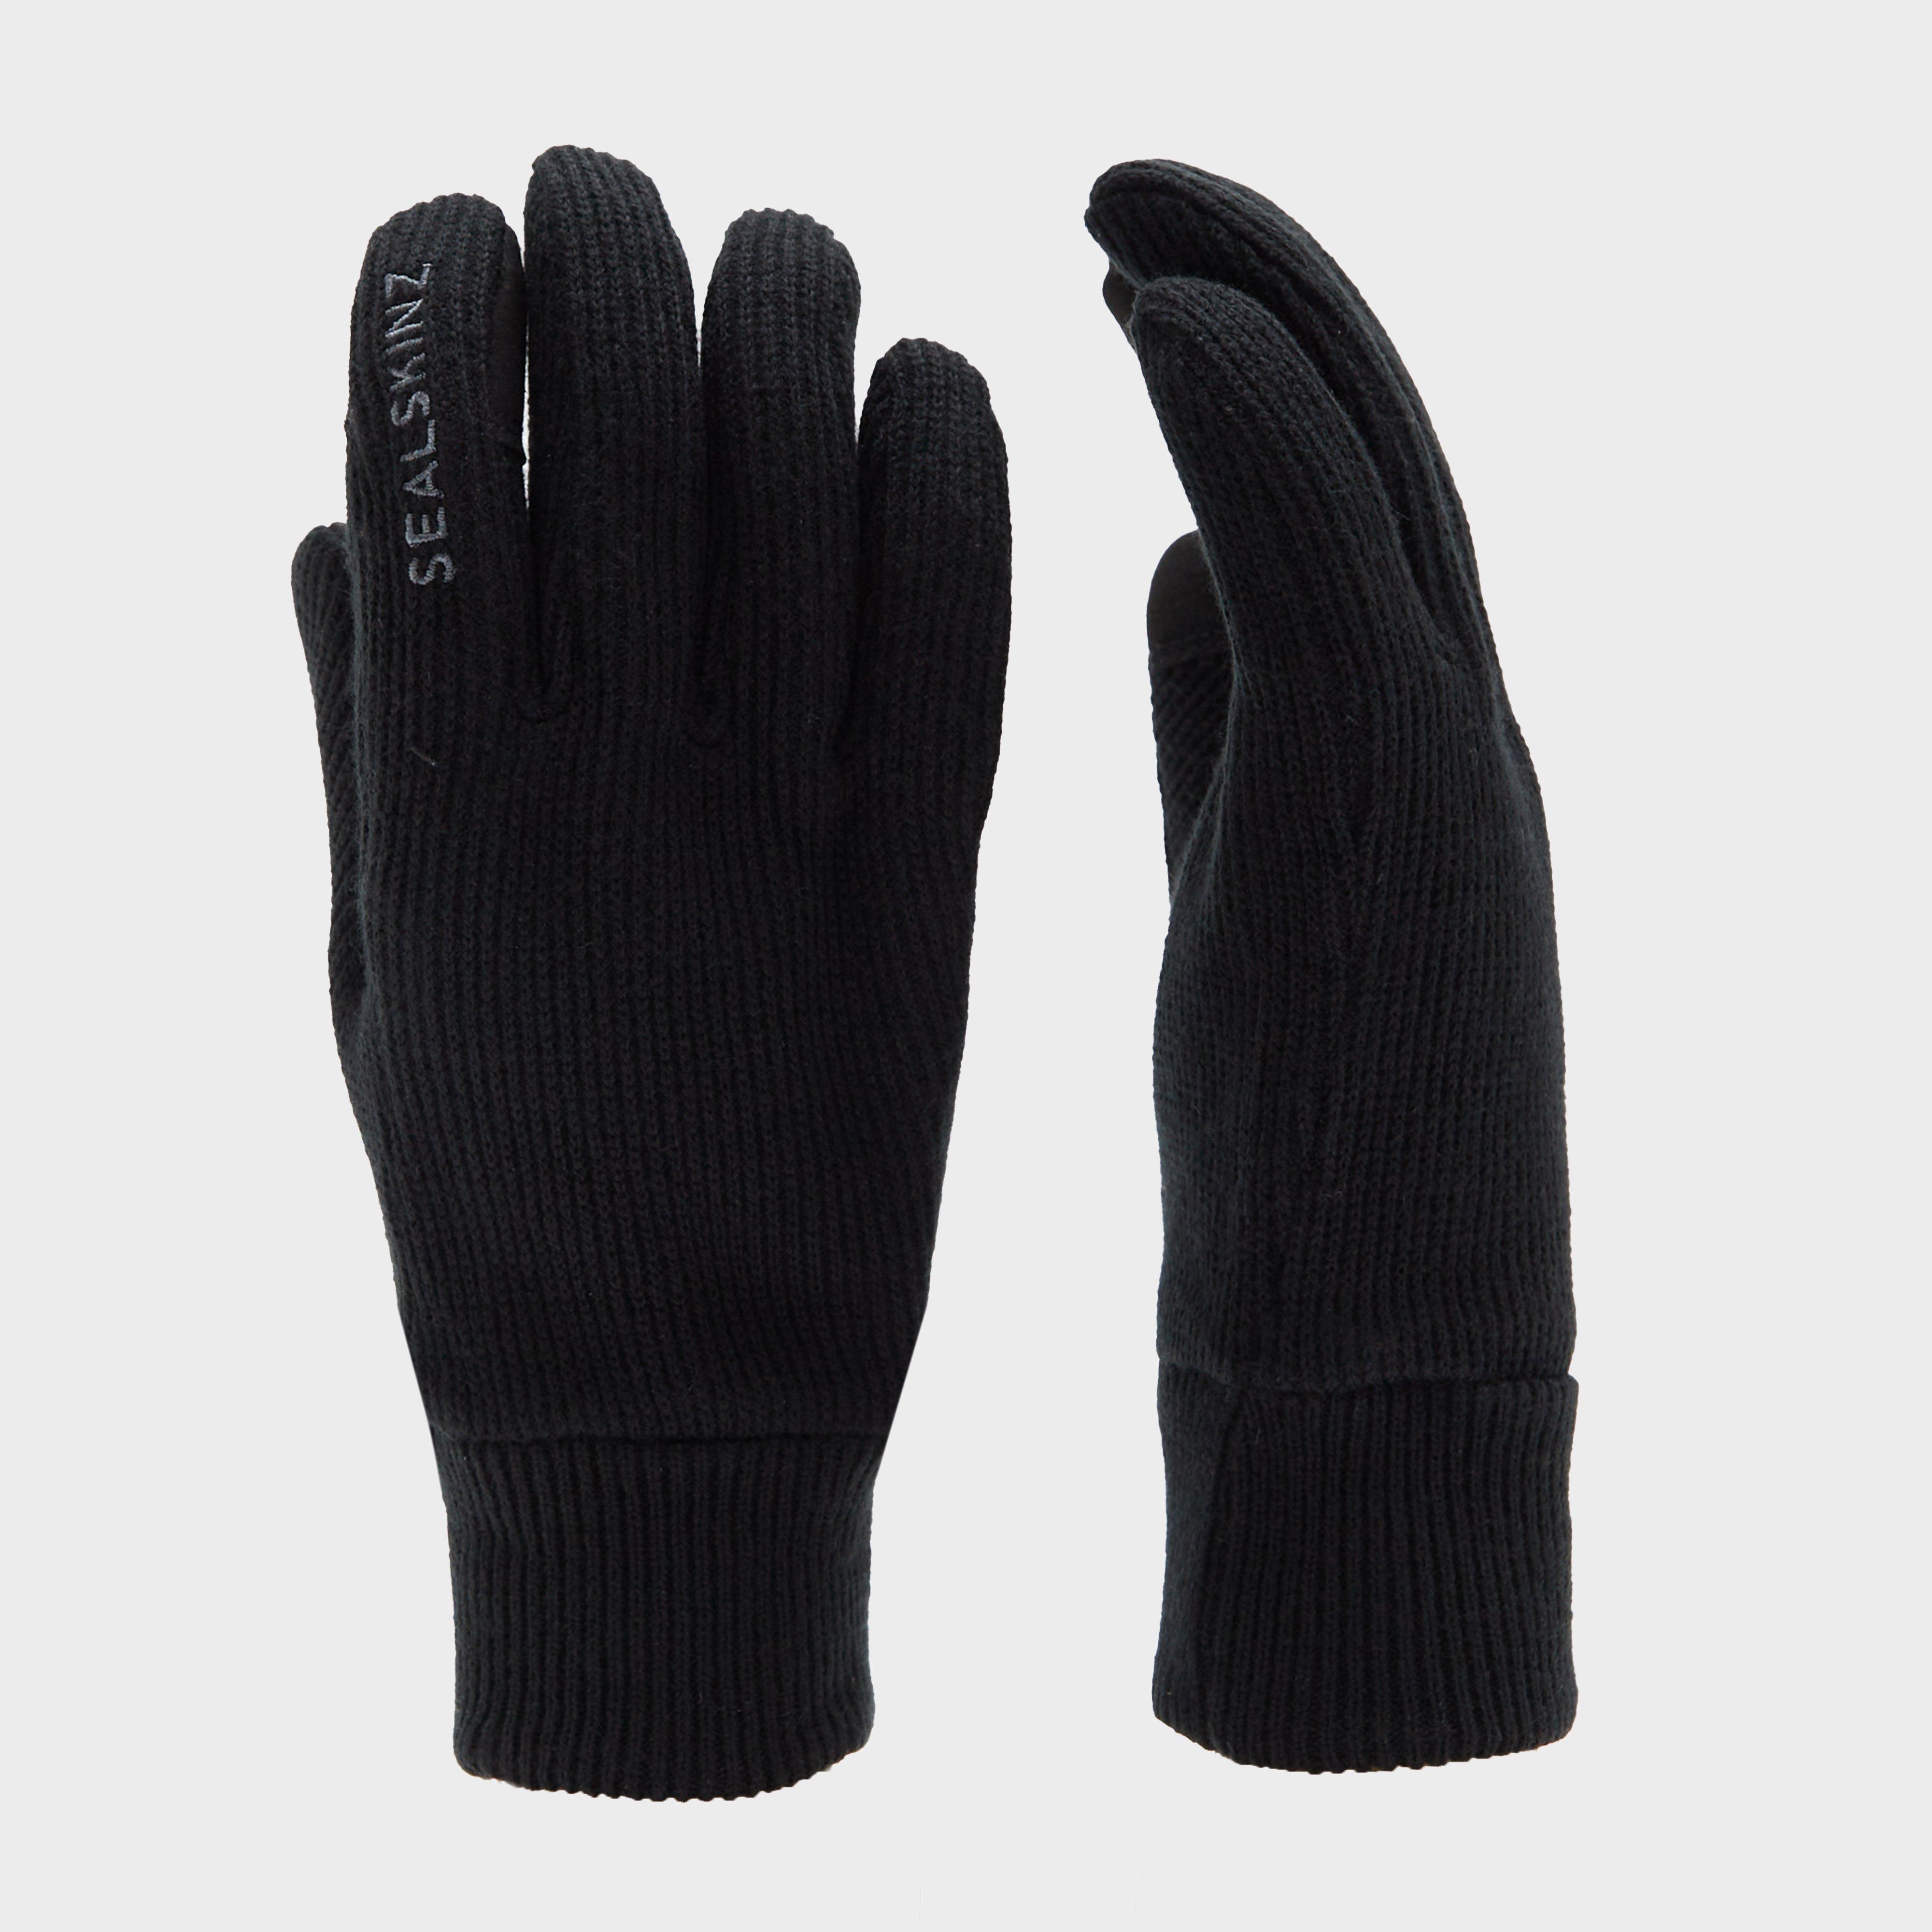  Sealskinz Unisex Necton Gloves